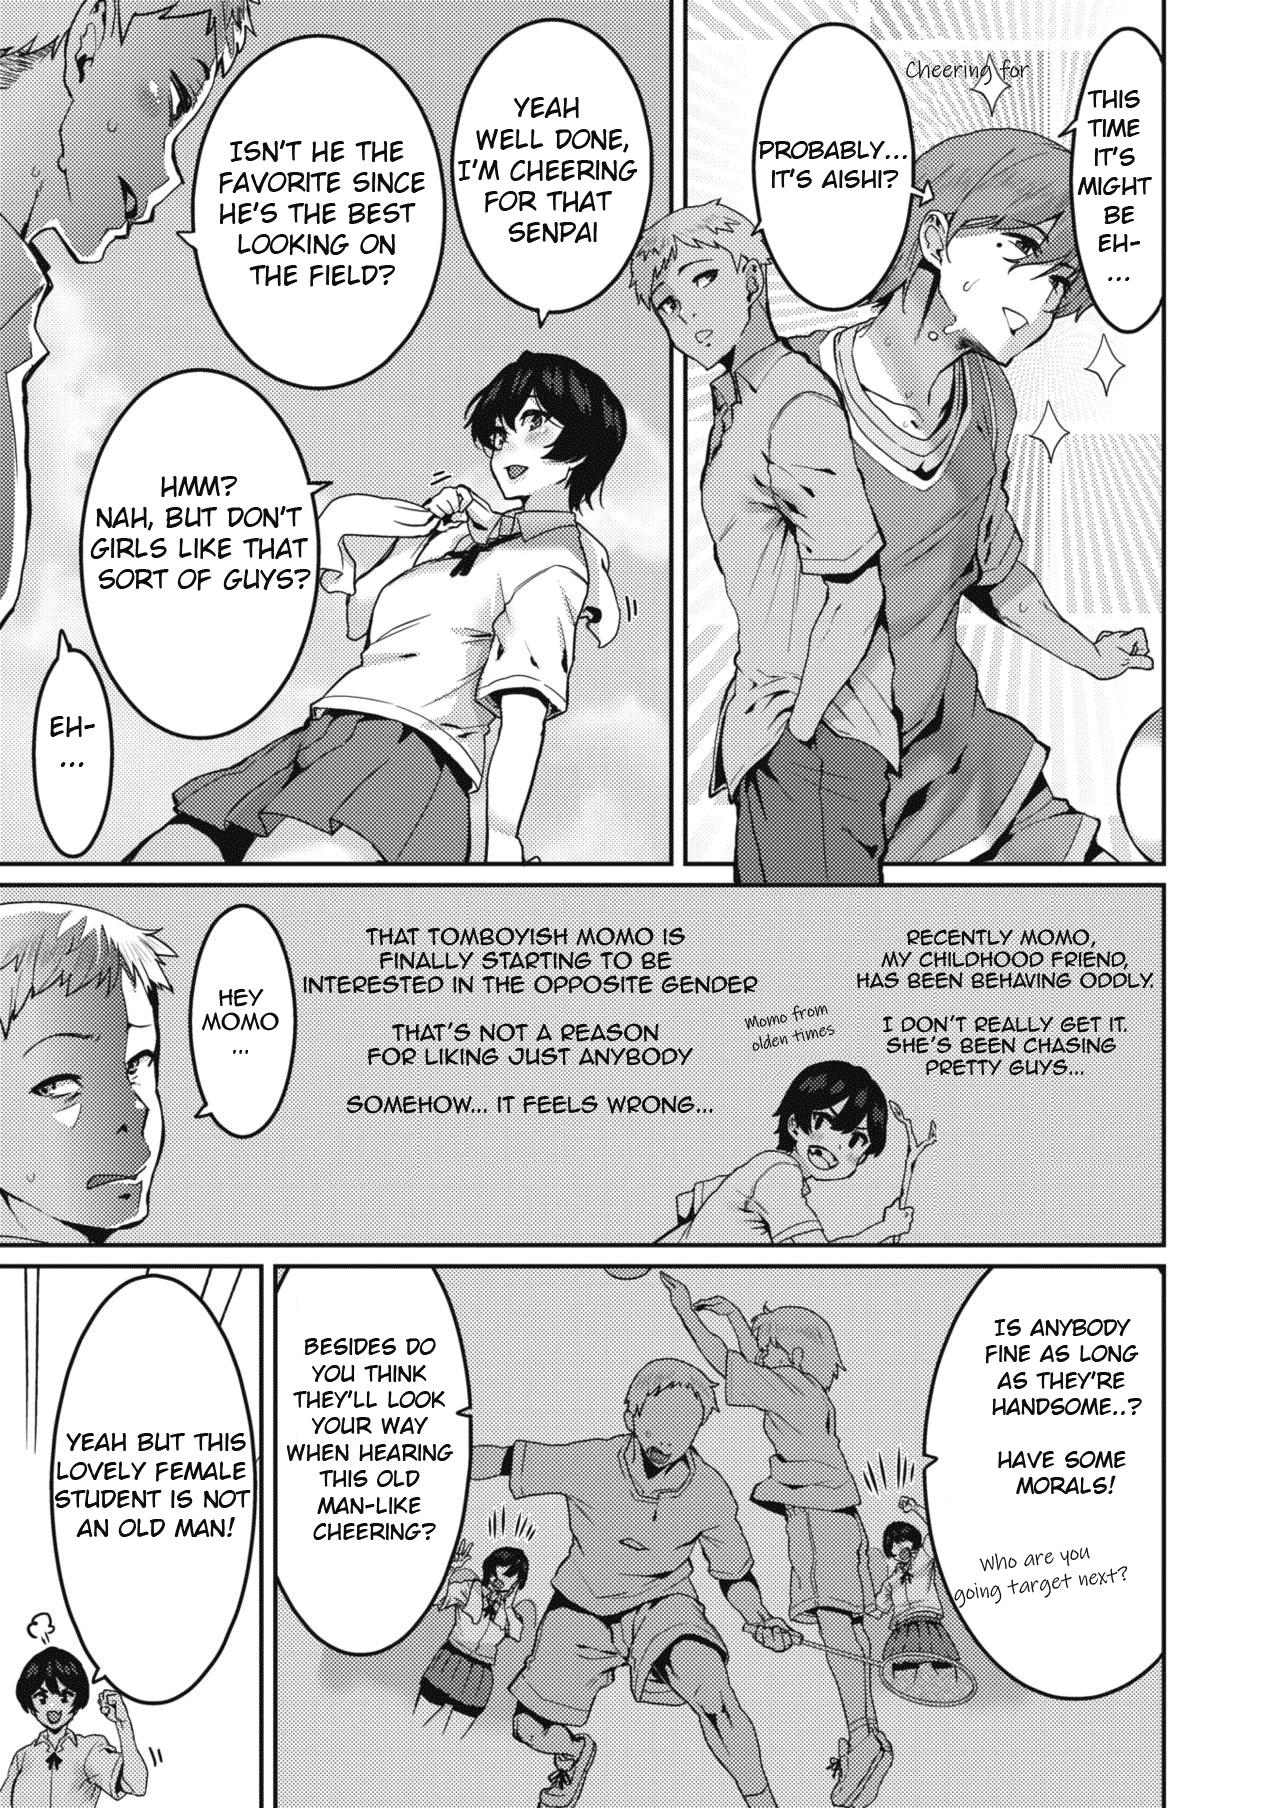 Stranger Omae ni Seikyuu Suru! Gayclips - Page 3